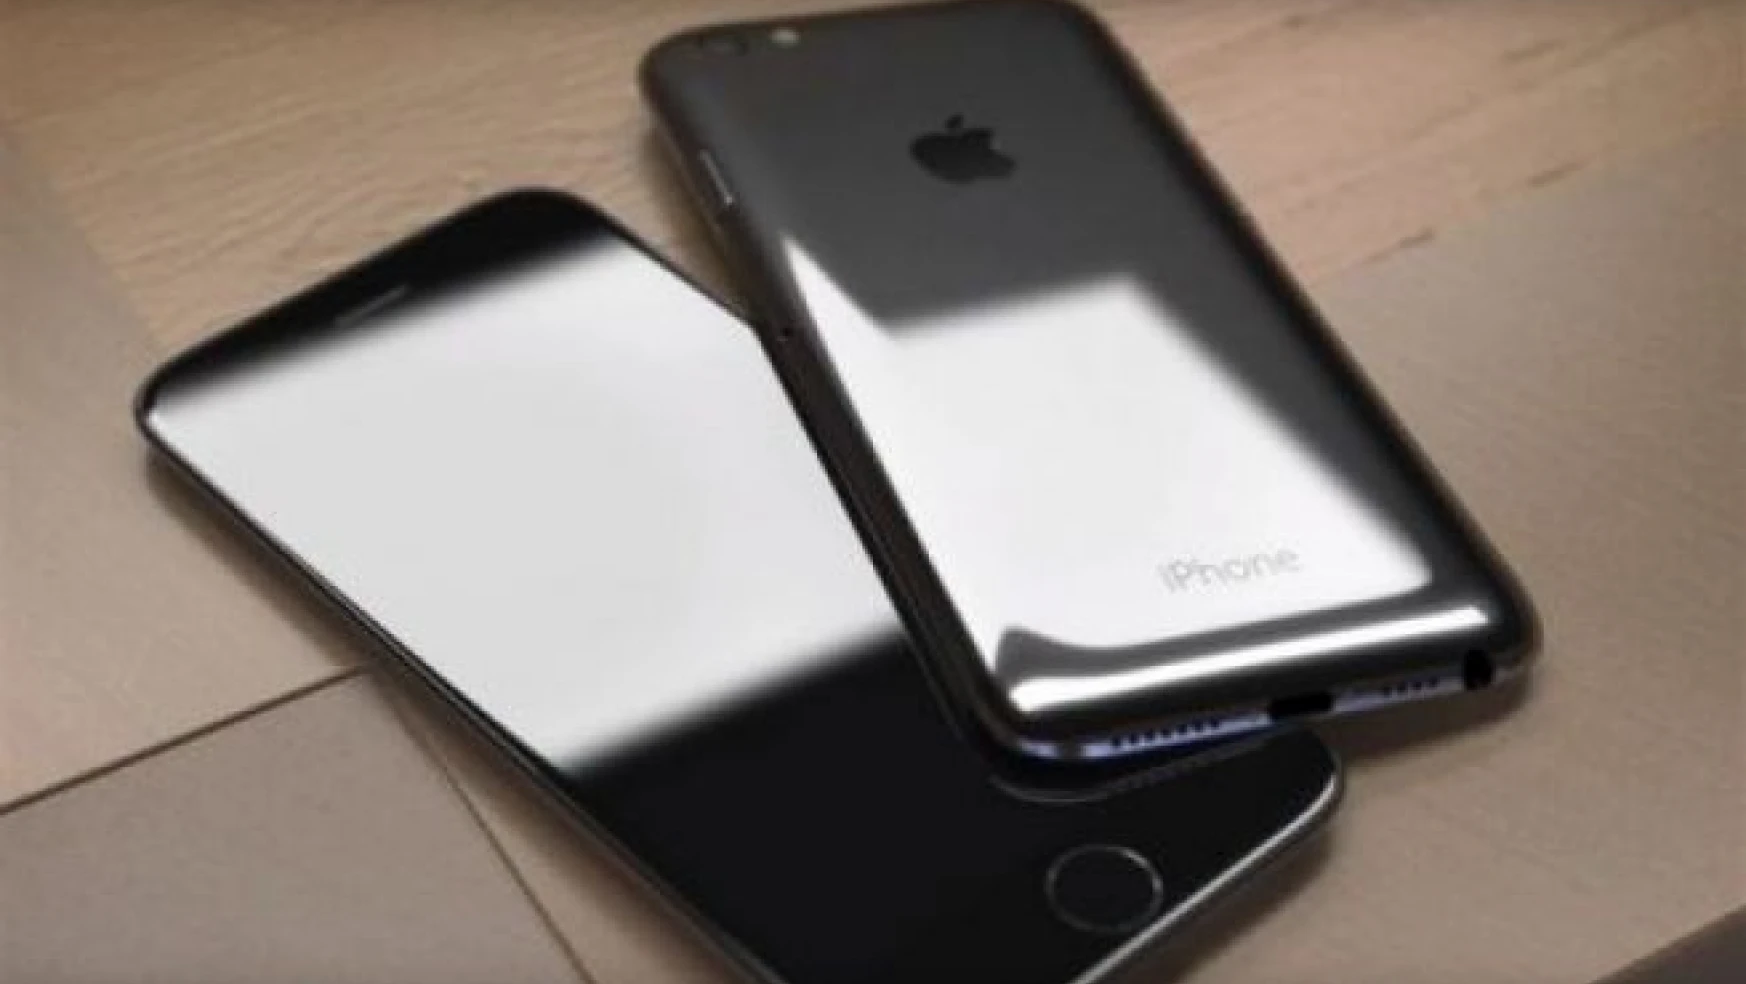 iPhone 6s ve iPhone 3GS karışımı ilginç iPhone 7 konsepti (Video)